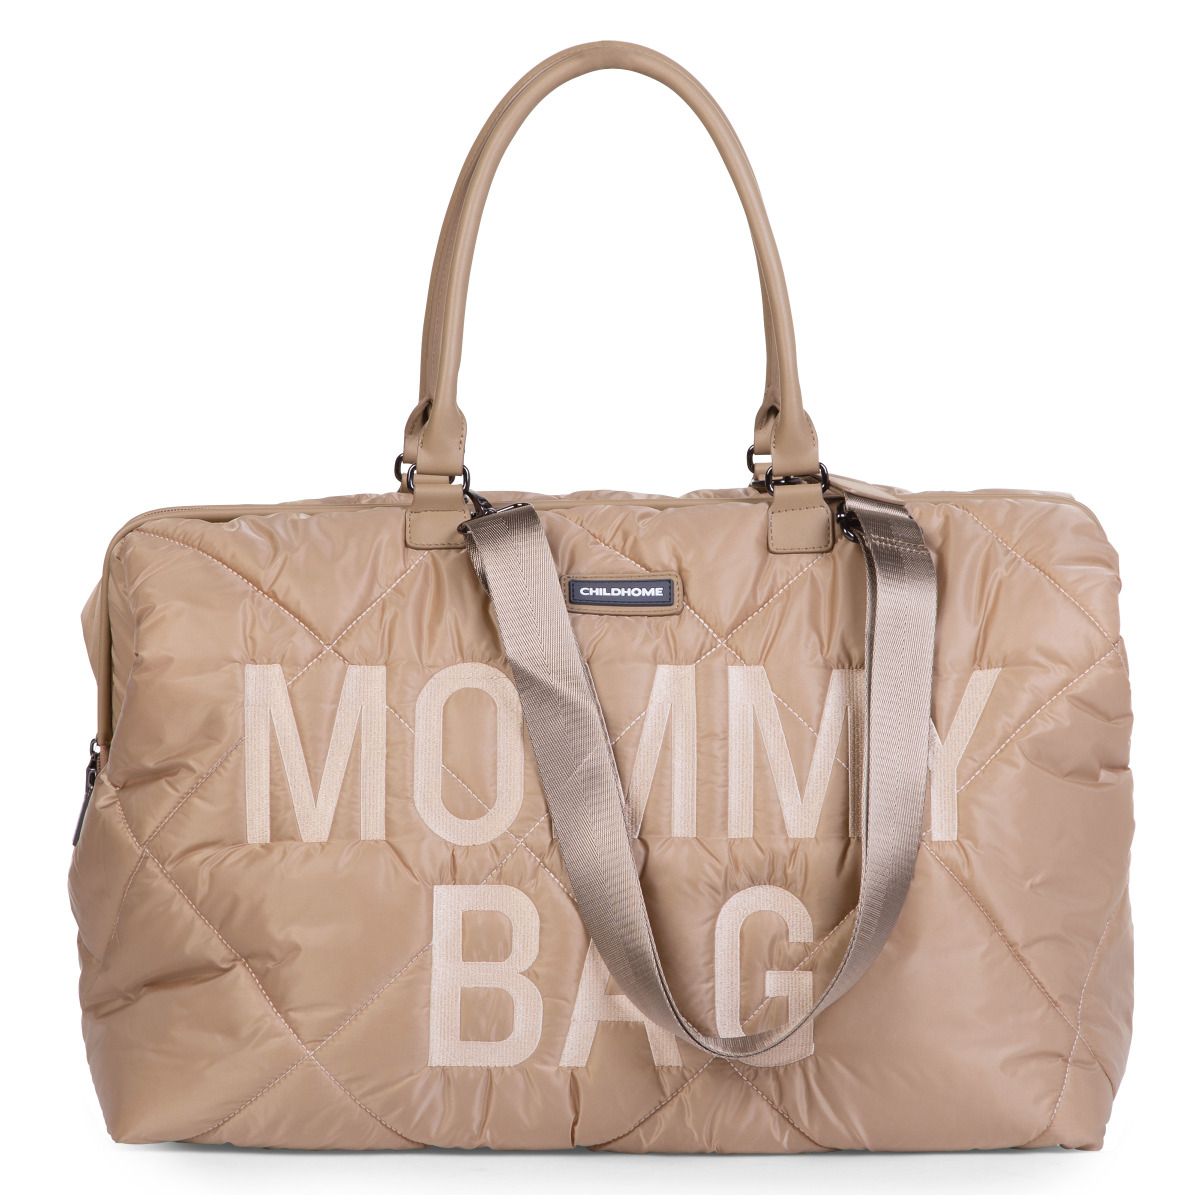 Сумка Childhome Mommy bag, дутая, бежевая (CWMBBPBE) - фото 4